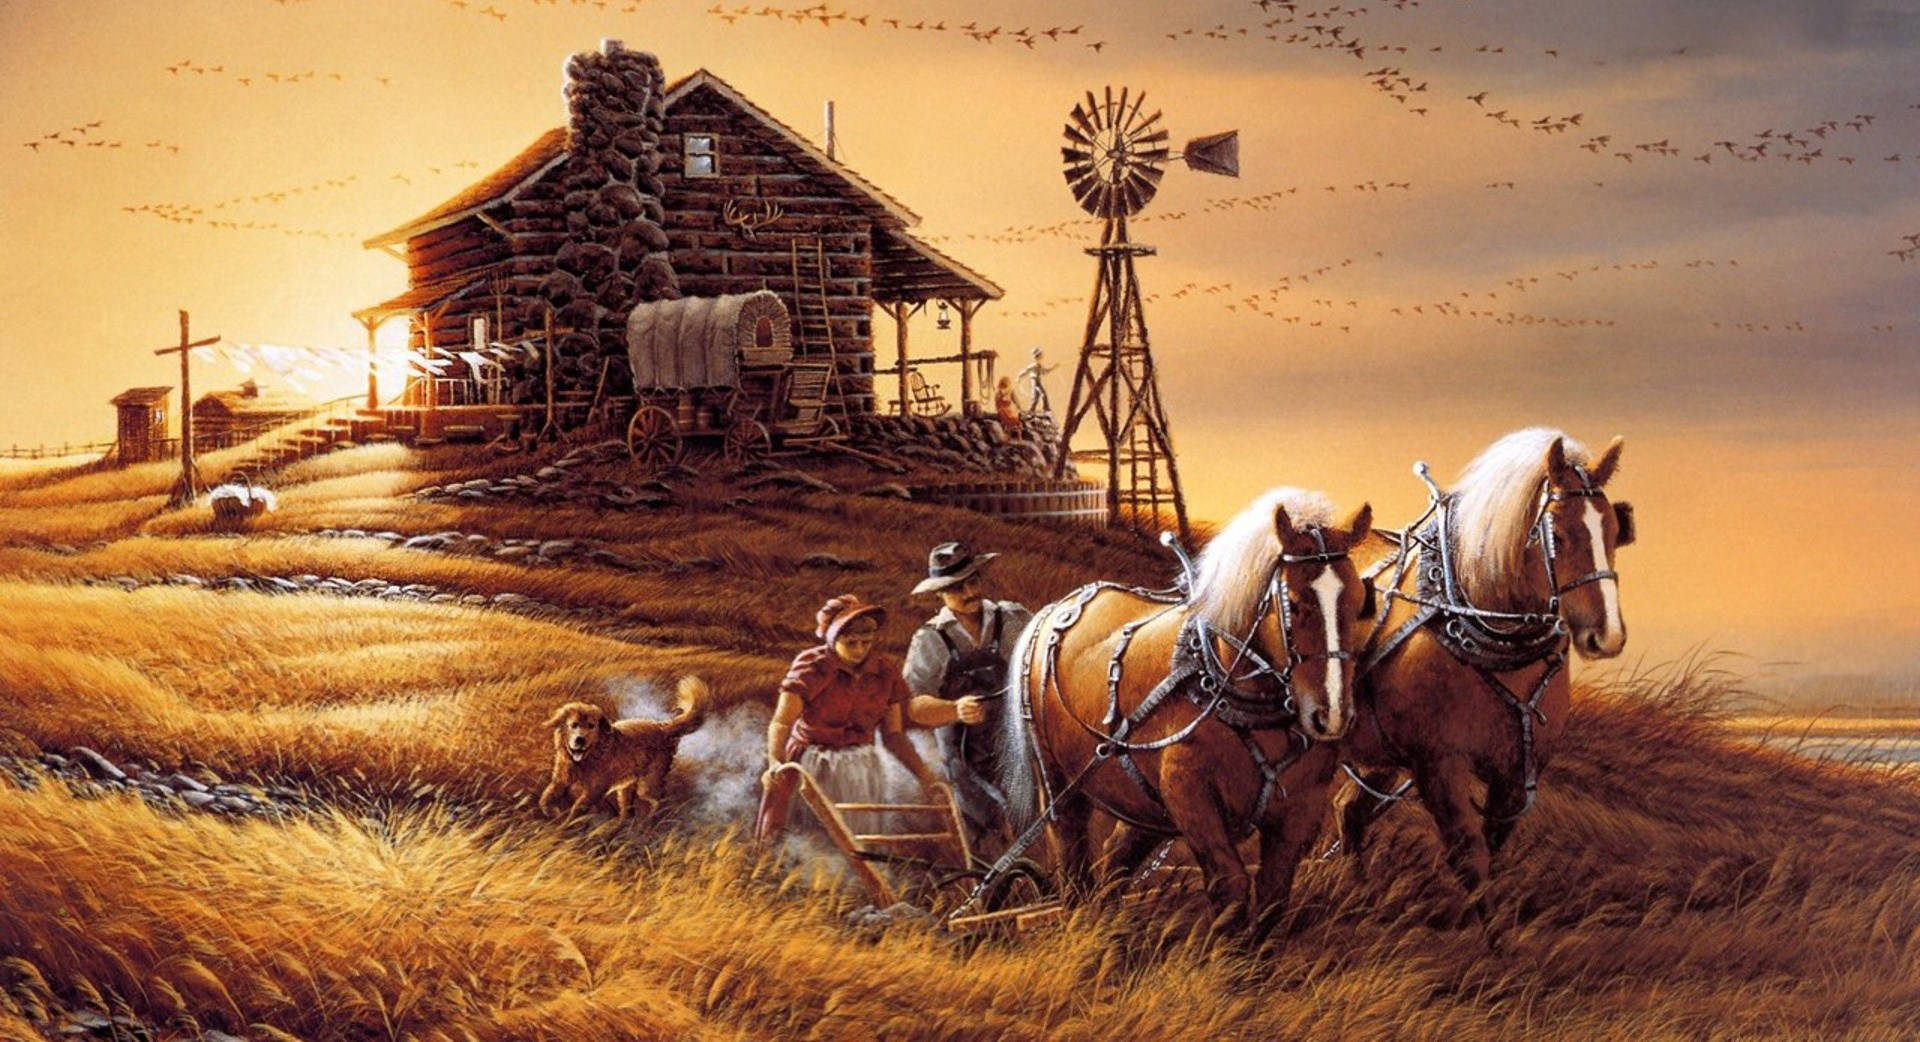 Et maleri af en gård med heste og mølle. Wallpaper